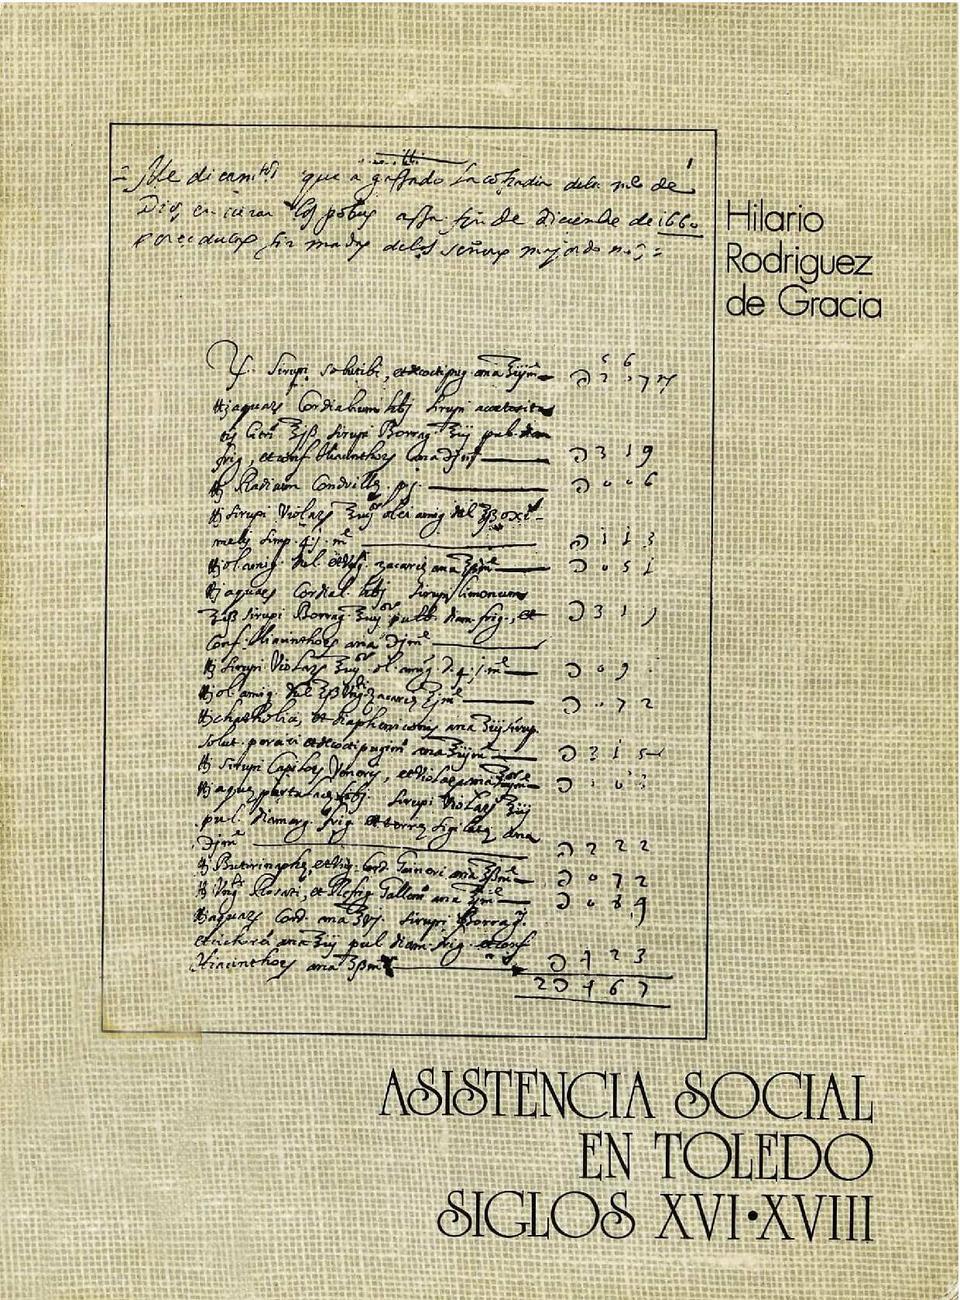 Asistencia social en Toledo: siglos XVI-XVIII / Hilario Rodríguez de Gracia.-. [Monografía]